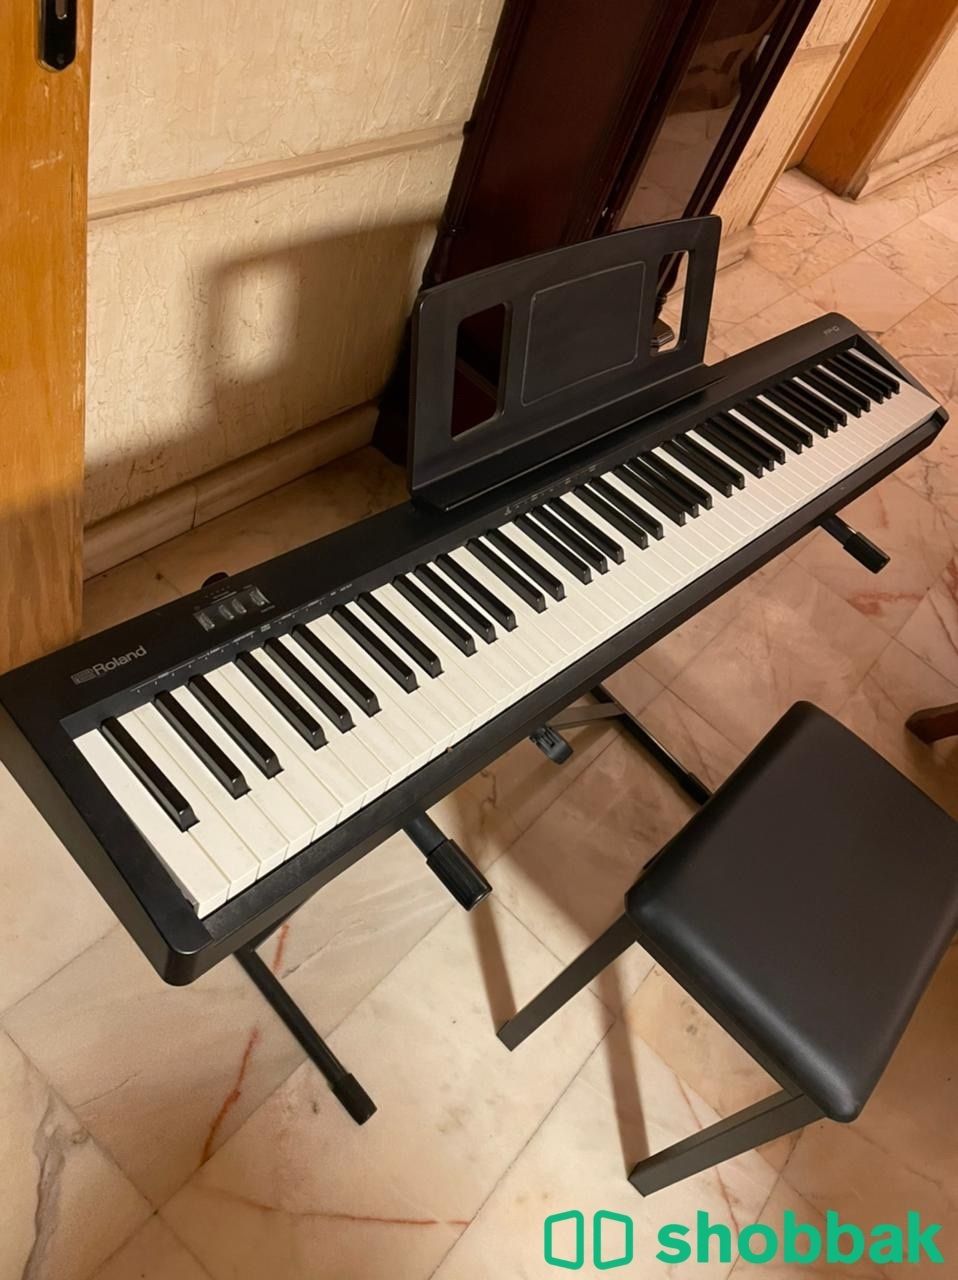 بيانو ديجيتال رولاند | Roland FP-10 Digital Piano Shobbak Saudi Arabia